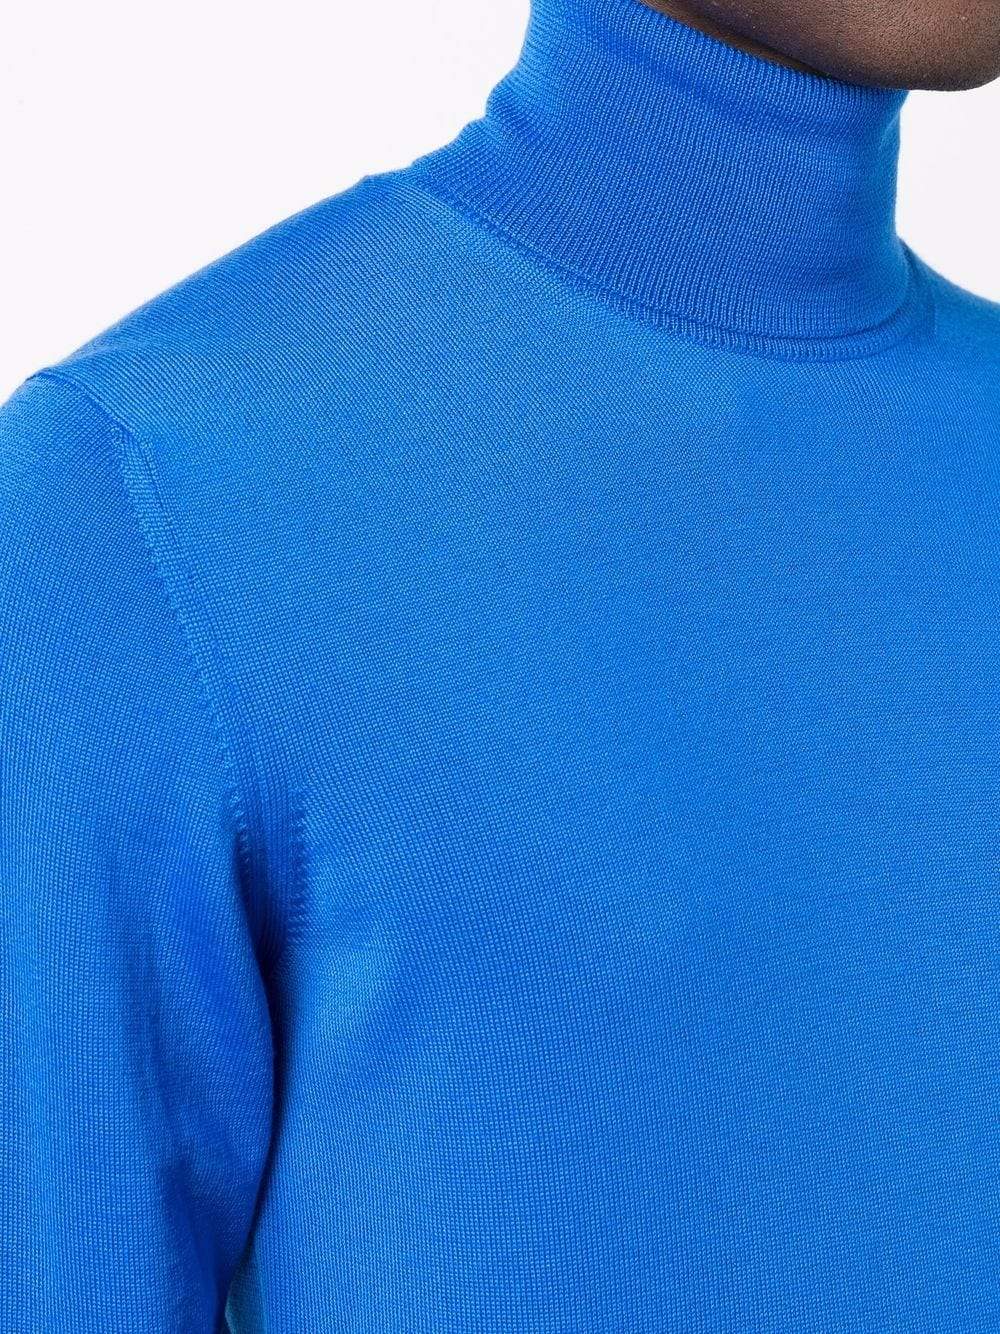 Roberto Collina Pull à col roulé Bleu - Lothaire boutiques (7087361786021)